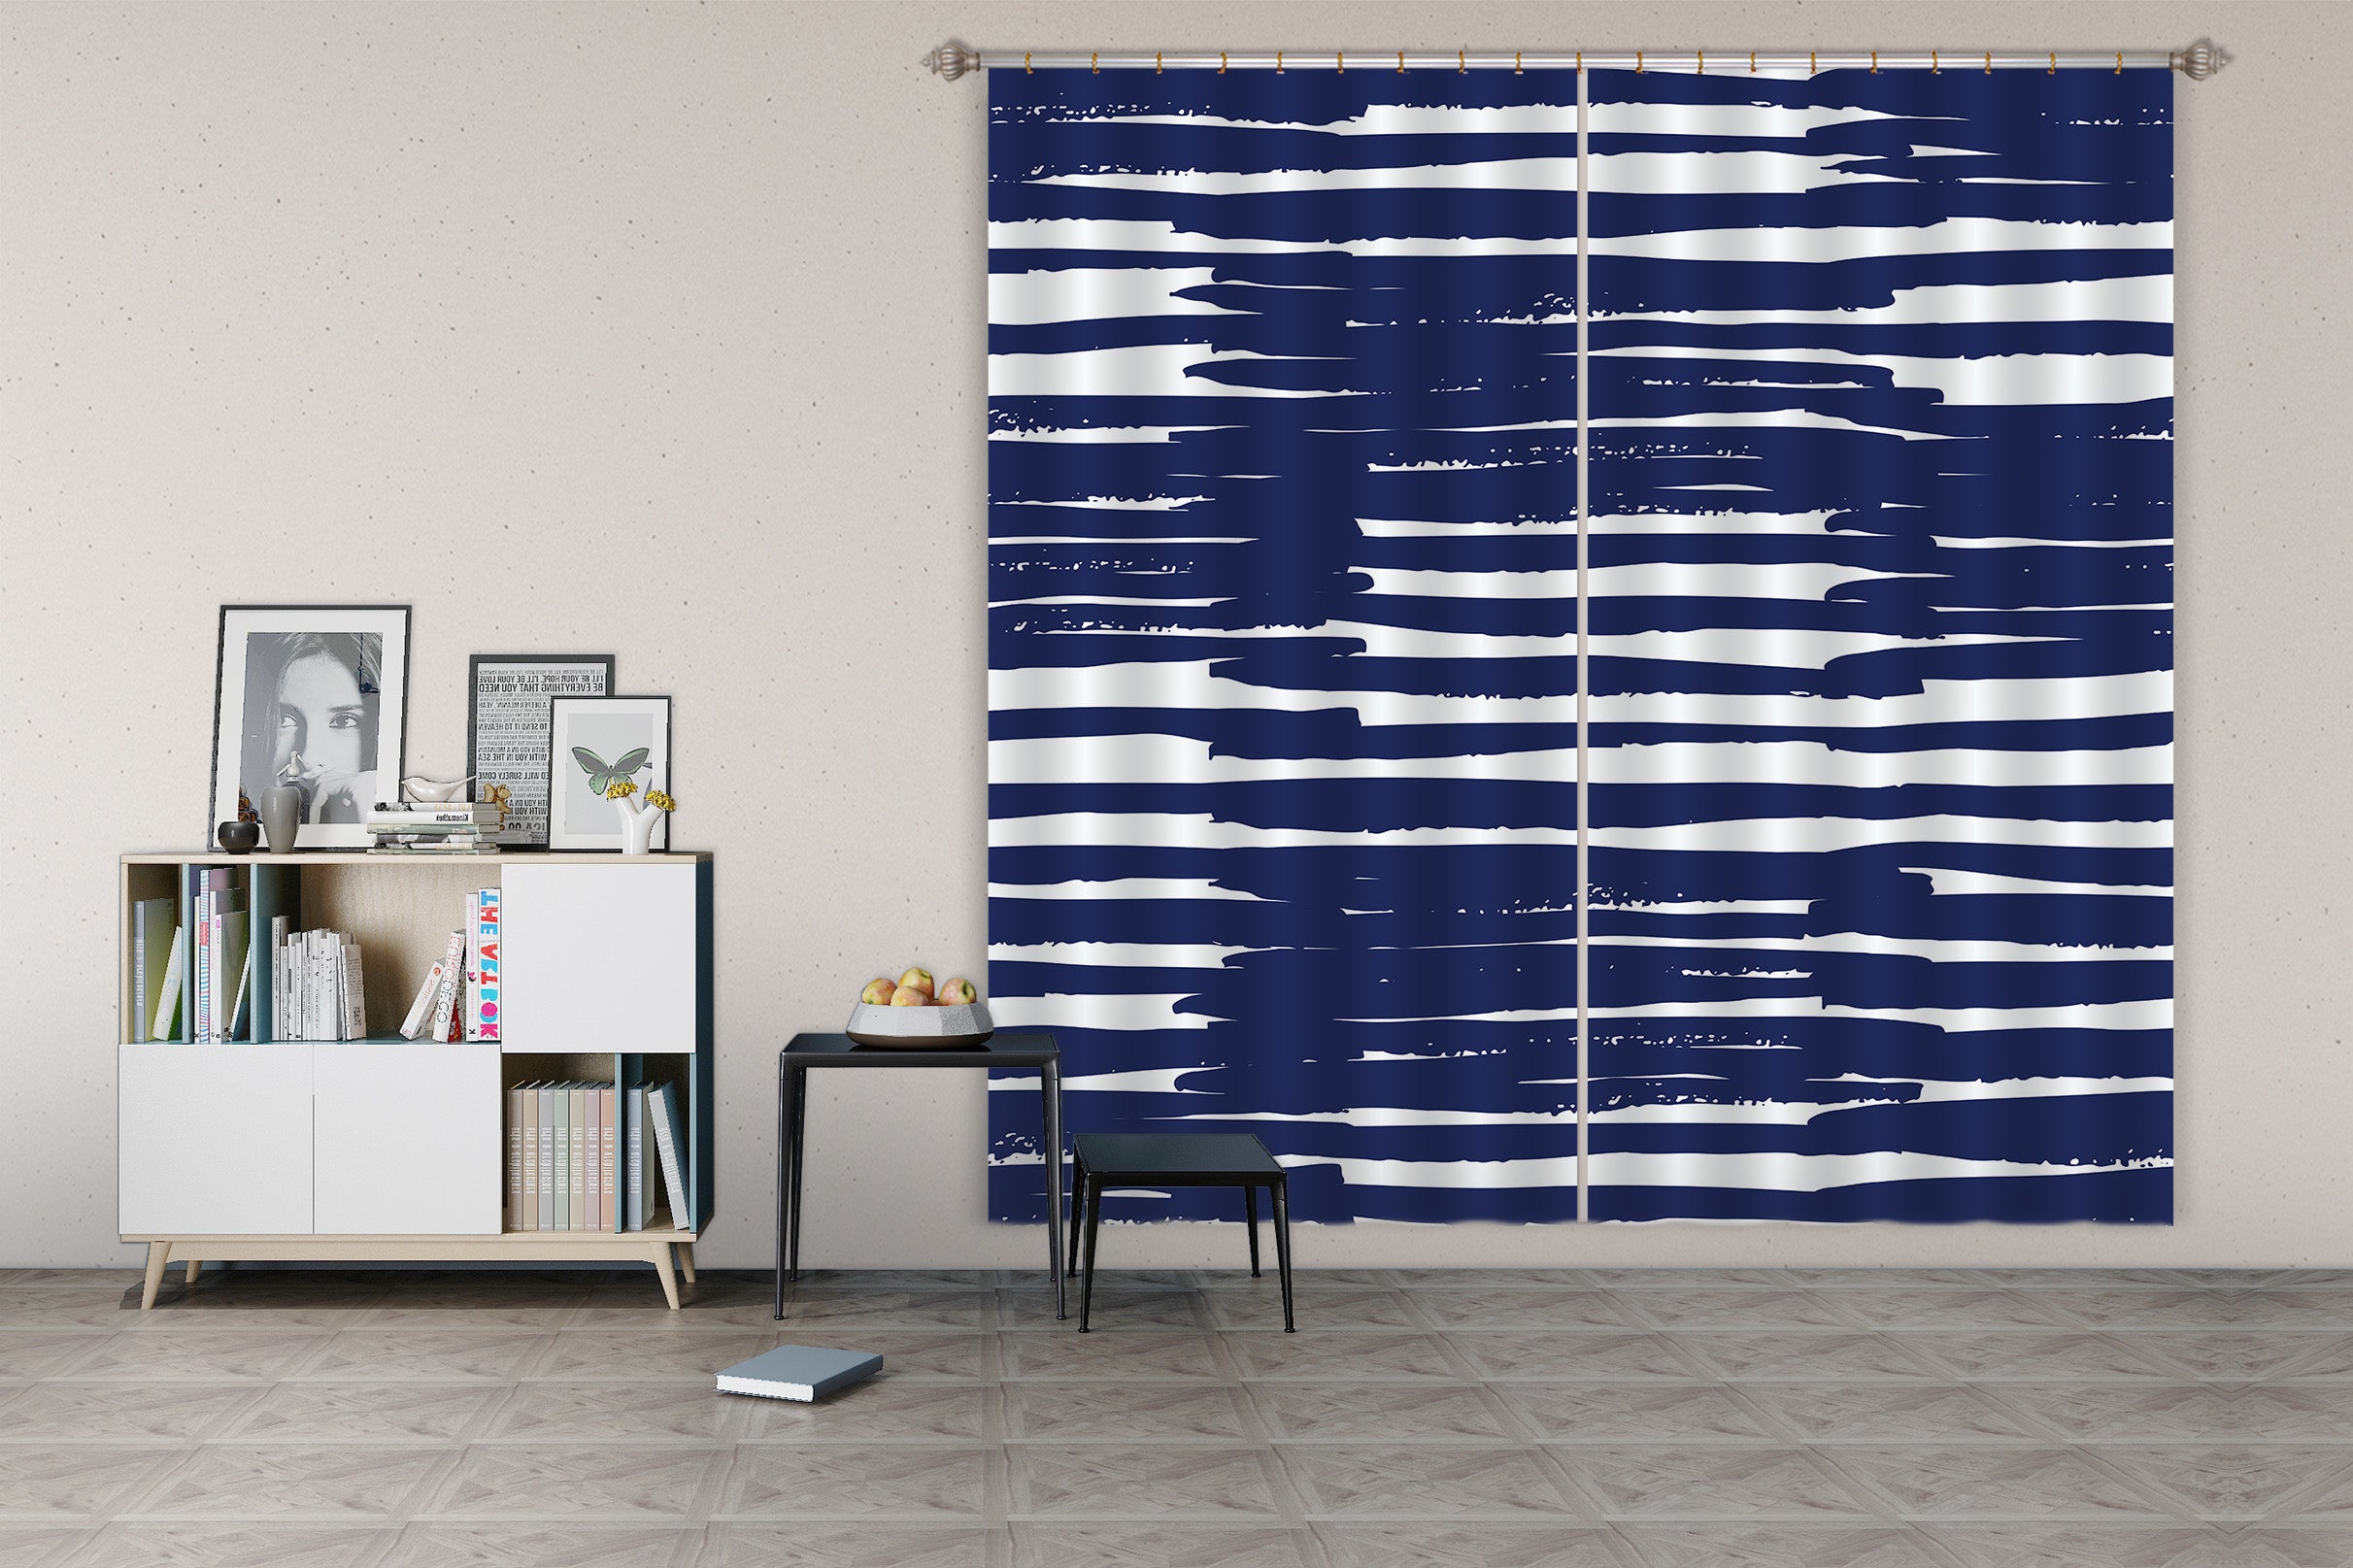 3D Dark Blue Line Pattern 111117 Kashmira Jayaprakash Curtain Curtains Drapes